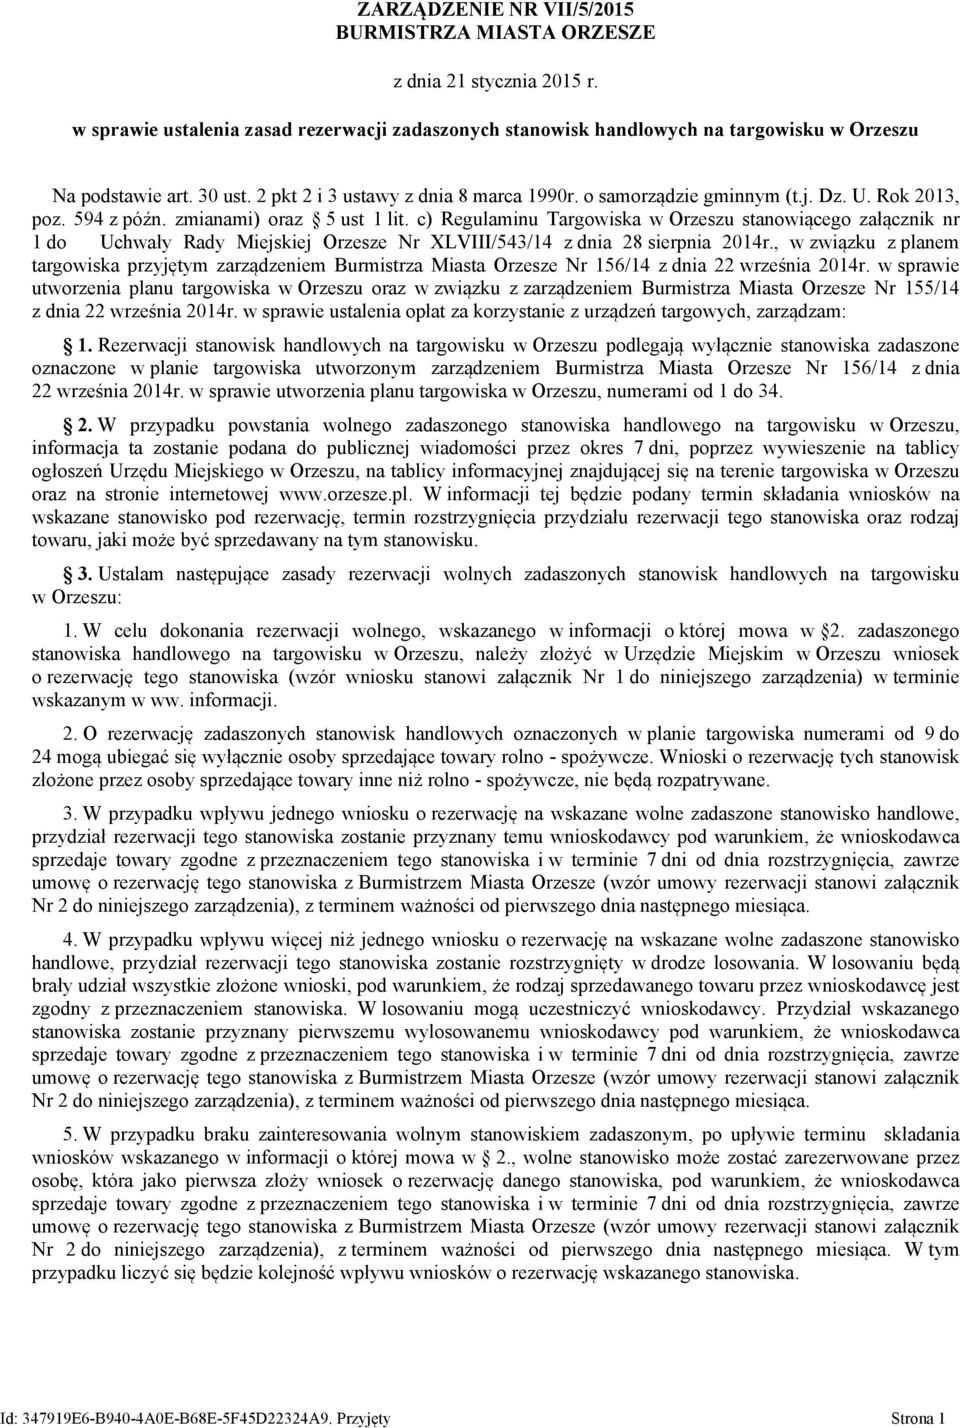 c) Regulaminu Targowiska w Orzeszu stanowiącego załącznik nr 1 do Uchwały Rady Miejskiej Orzesze Nr XLVIII/543/14 z dnia 28 sierpnia 2014r.